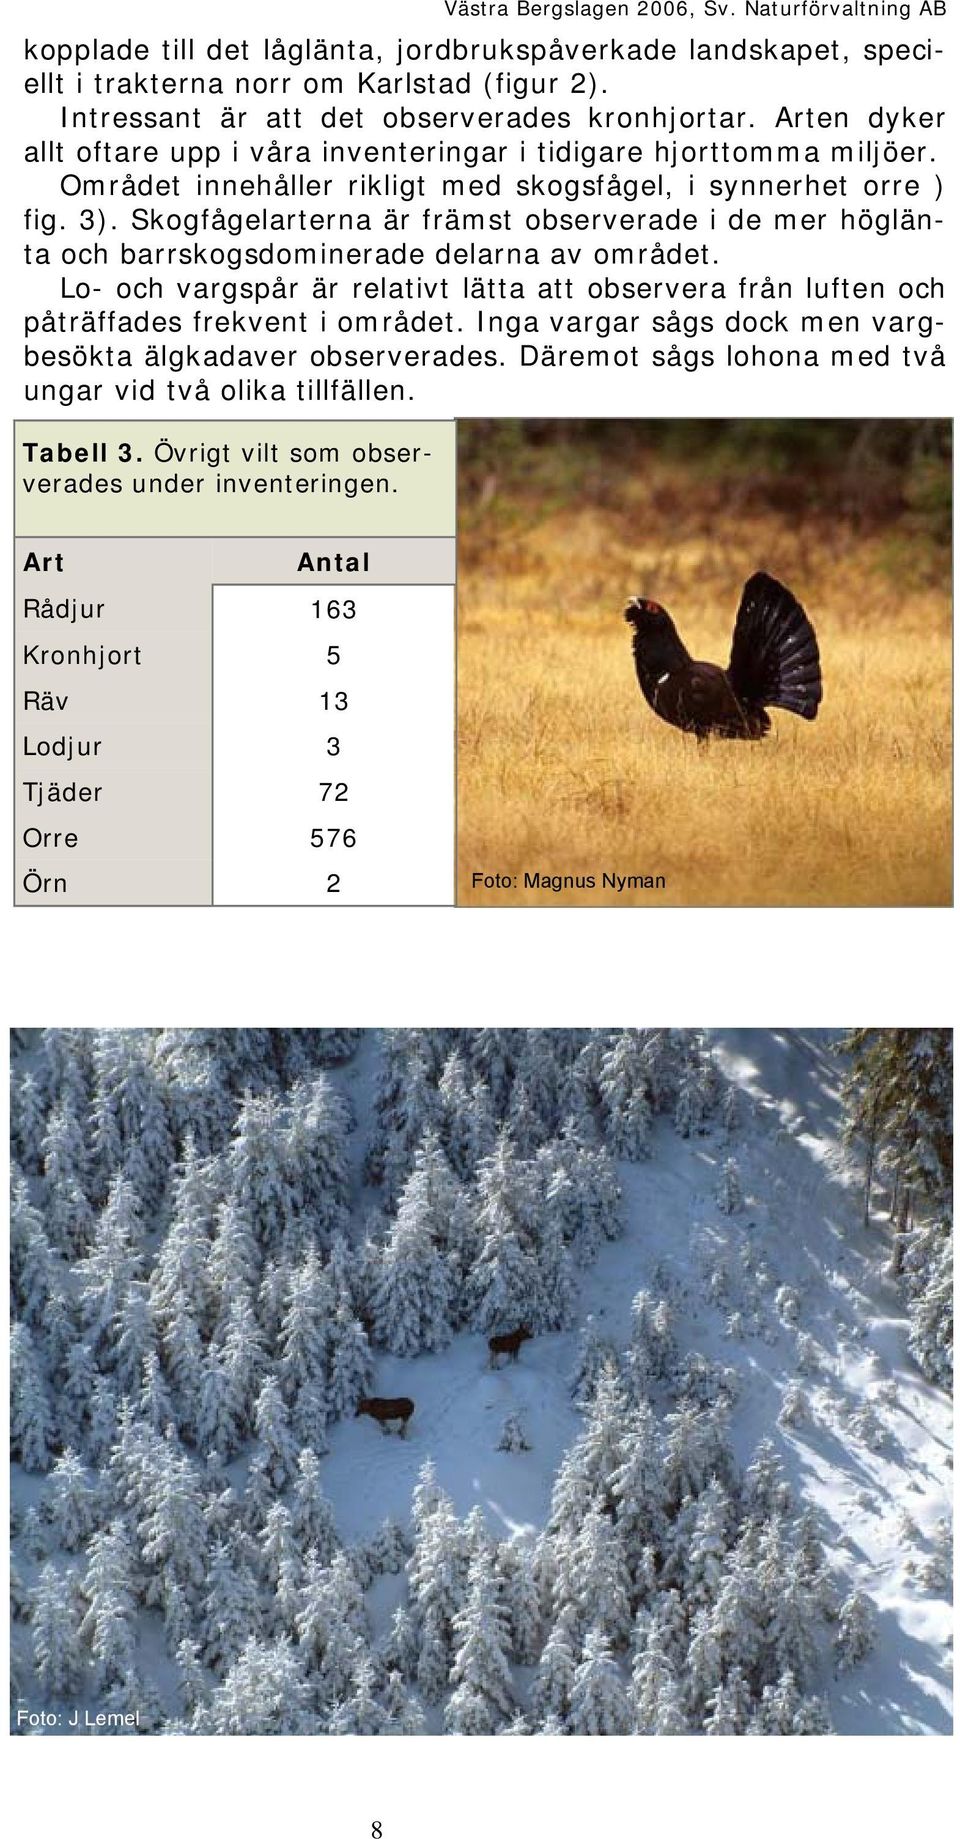 Skogfågelarterna är främst observerade i de mer höglänta och barrskogsdominerade delarna av området. Lo- och vargspår är relativt lätta att observera från luften och påträffades frekvent i området.